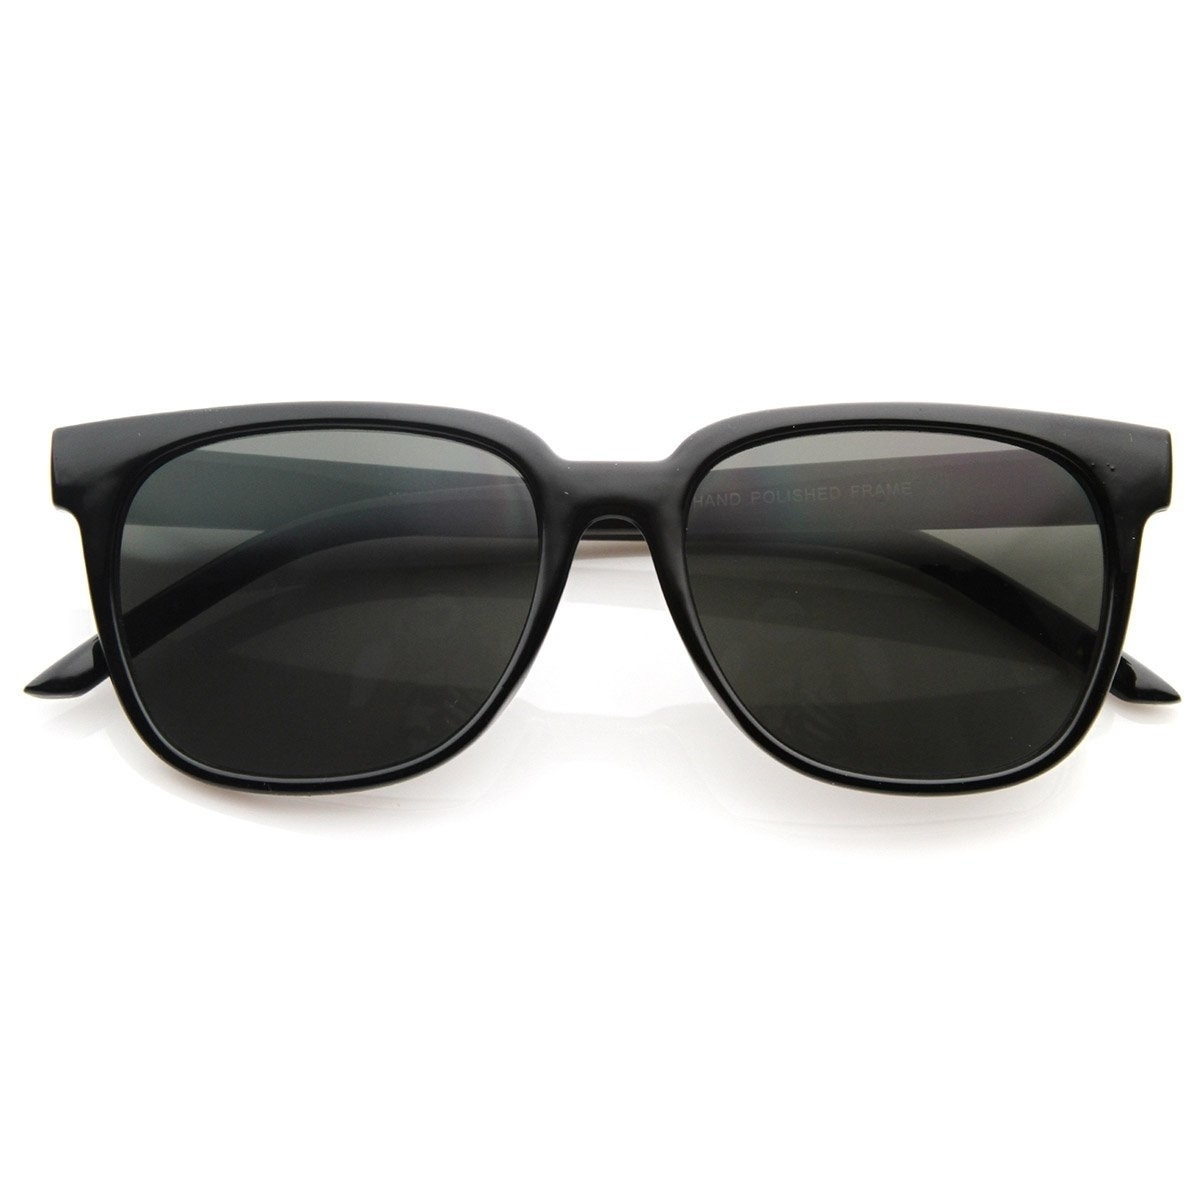 Retro Fashion Inspired Basic Horned Rim Horn Rimmed Style Sunglasses - Tortoise